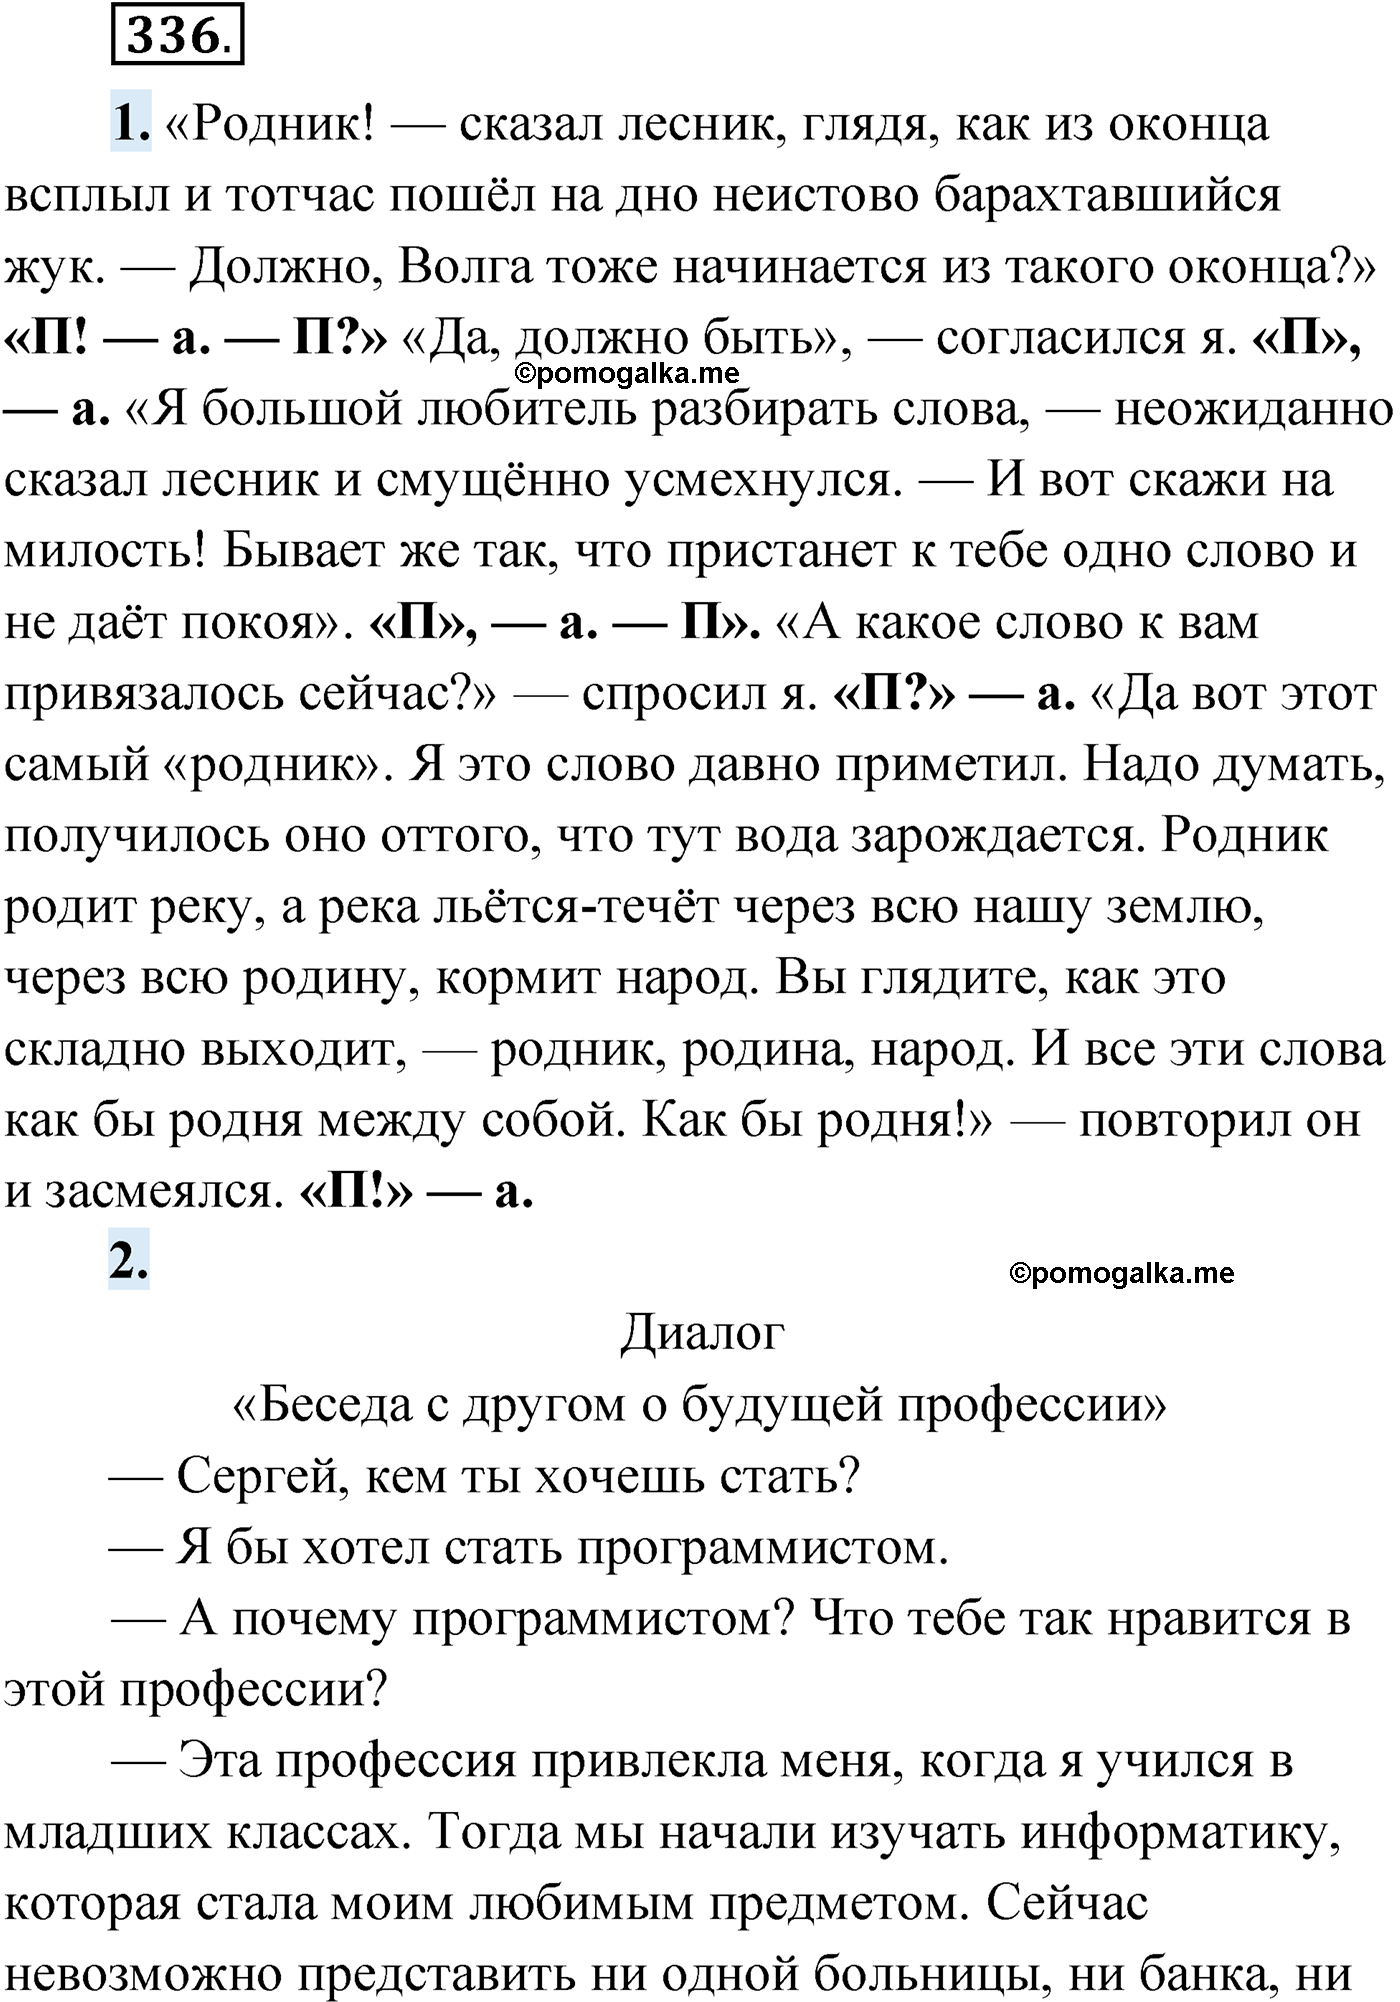 упражнение №336 русский язык 9 класс Мурина 2019 год